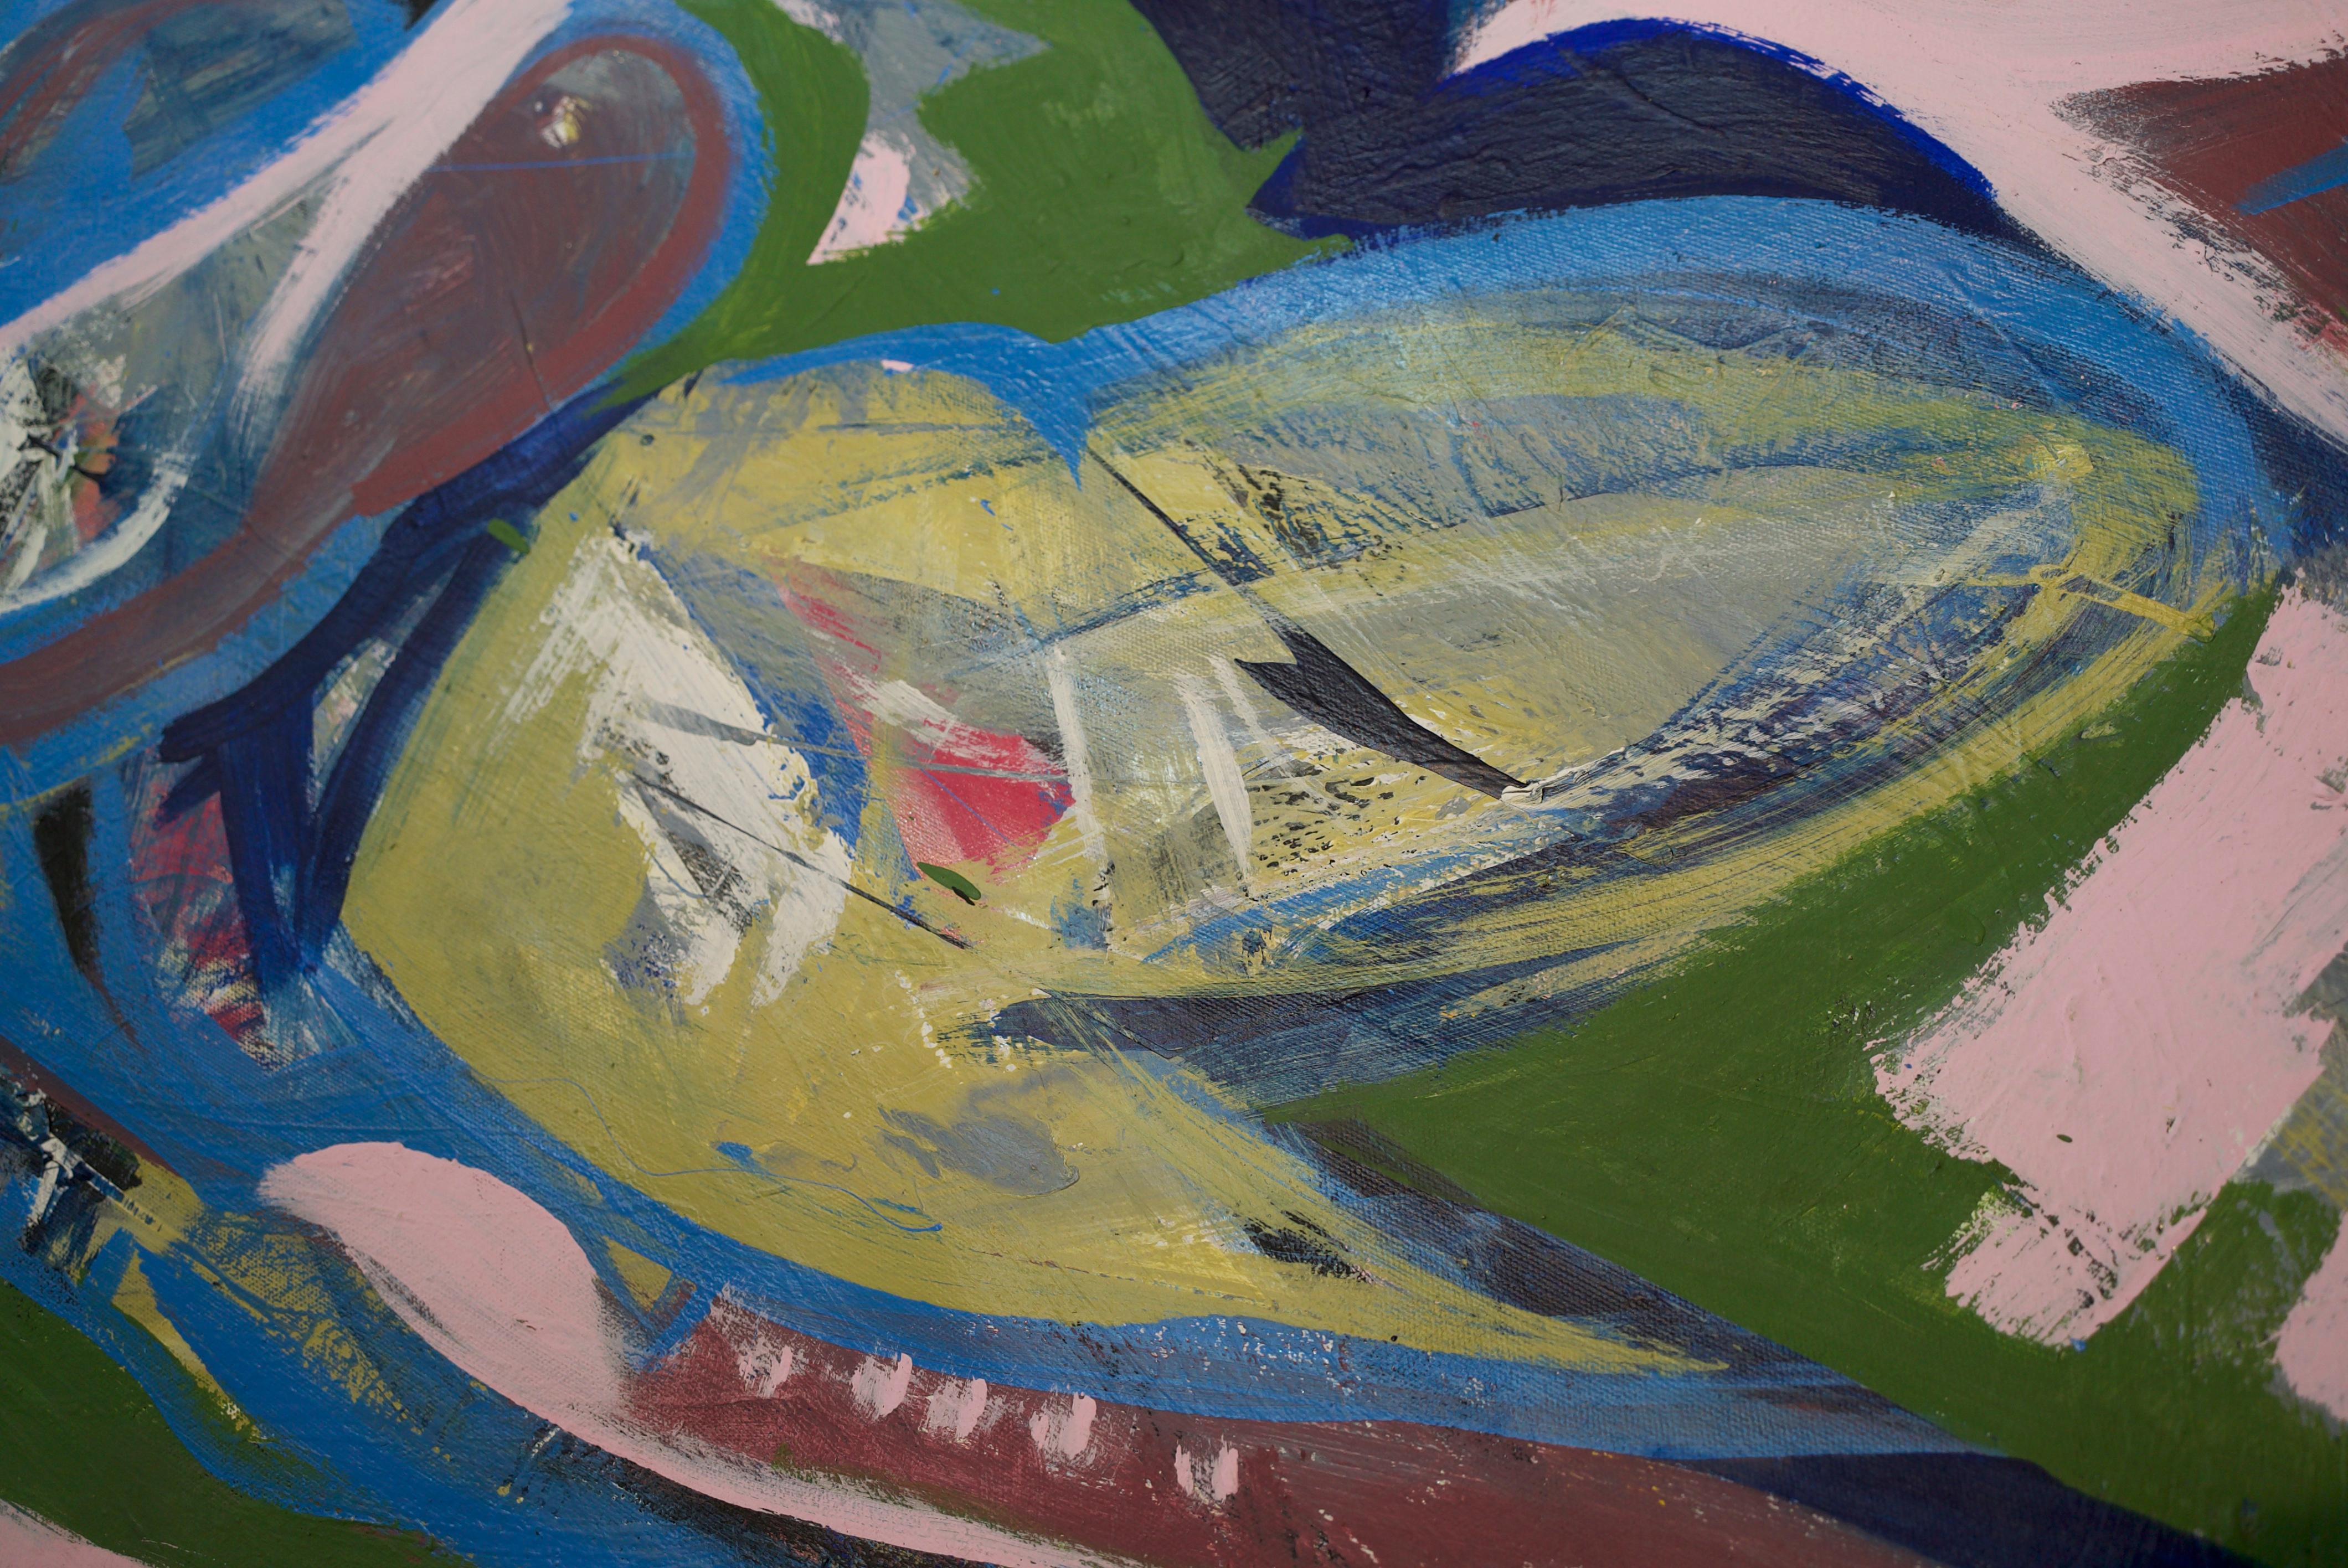 Art contemporain, peinture abstraite
Technique mixte sur toile
180x180cm
Signé 


A propos de l'artiste
Artiste mexicain multidisciplinaire vivant à Mexico. Il utilise la peinture et le son comme base de son travail.

Son travail fait référence à la